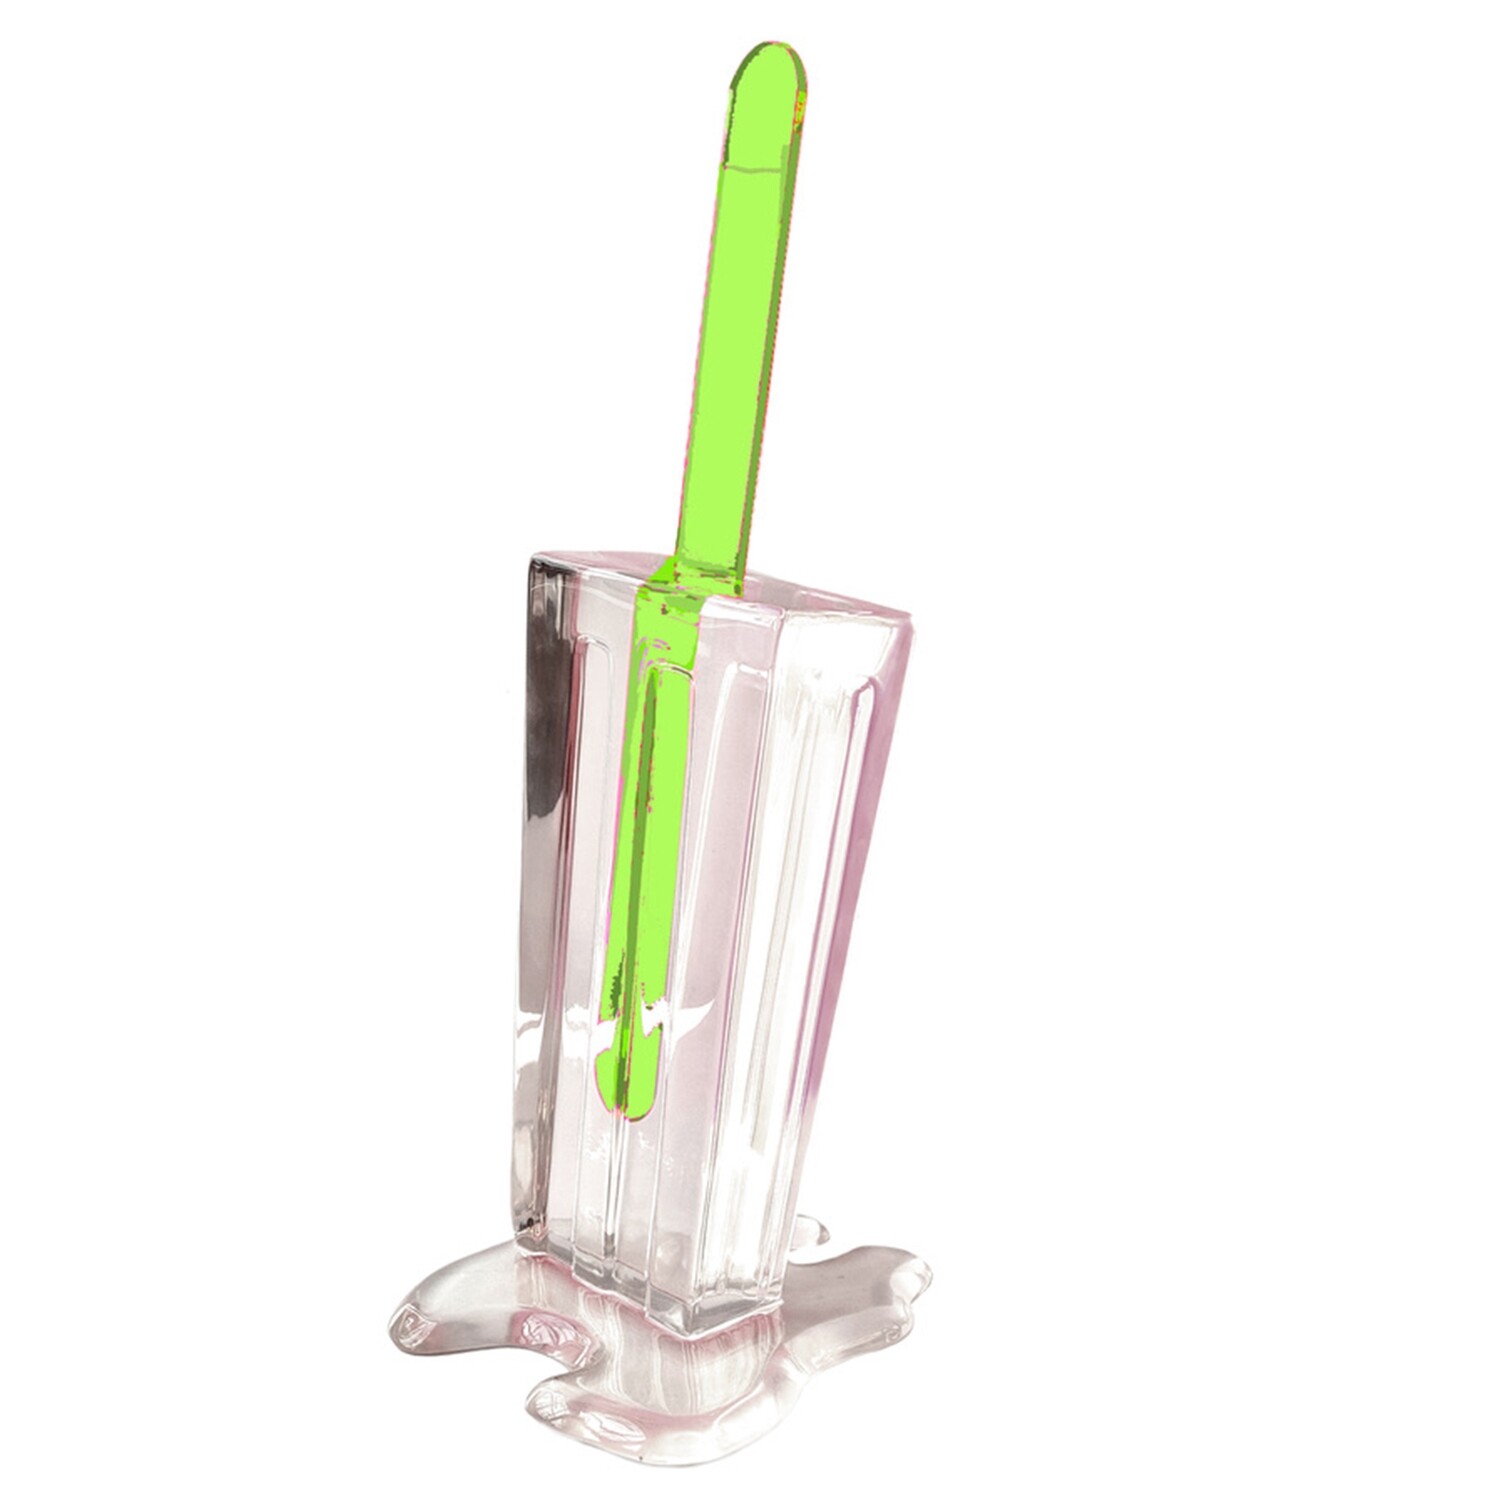 Melting Popsicle Art - Crystal Clear Pop, 18" GREEN - Original Melting Pops